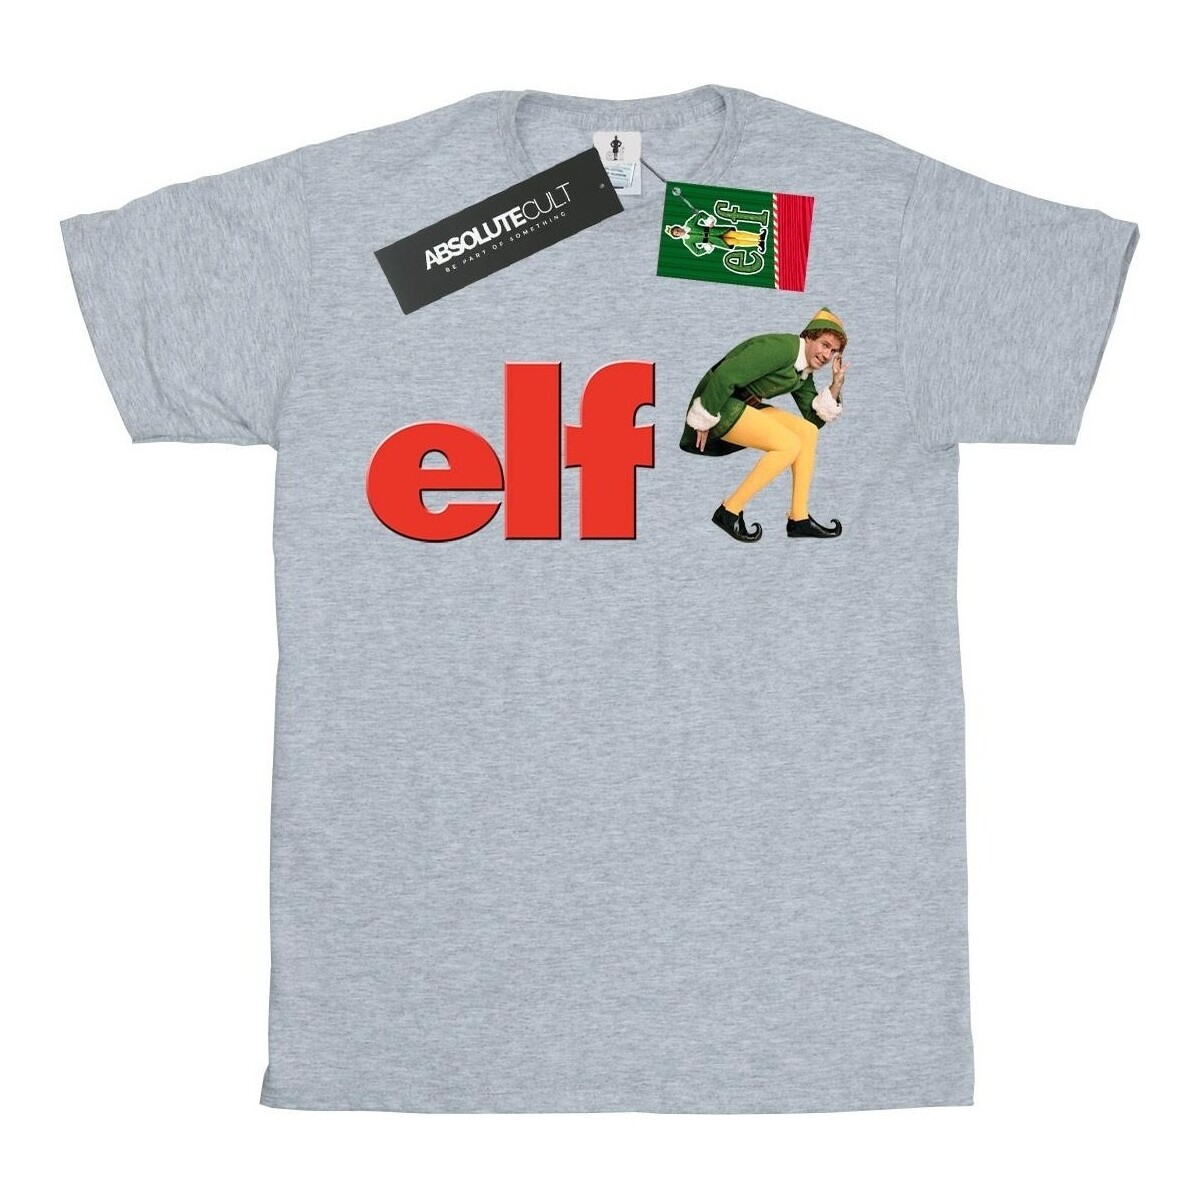 textil Niño Camisetas manga corta Elf Crouching Logo Gris